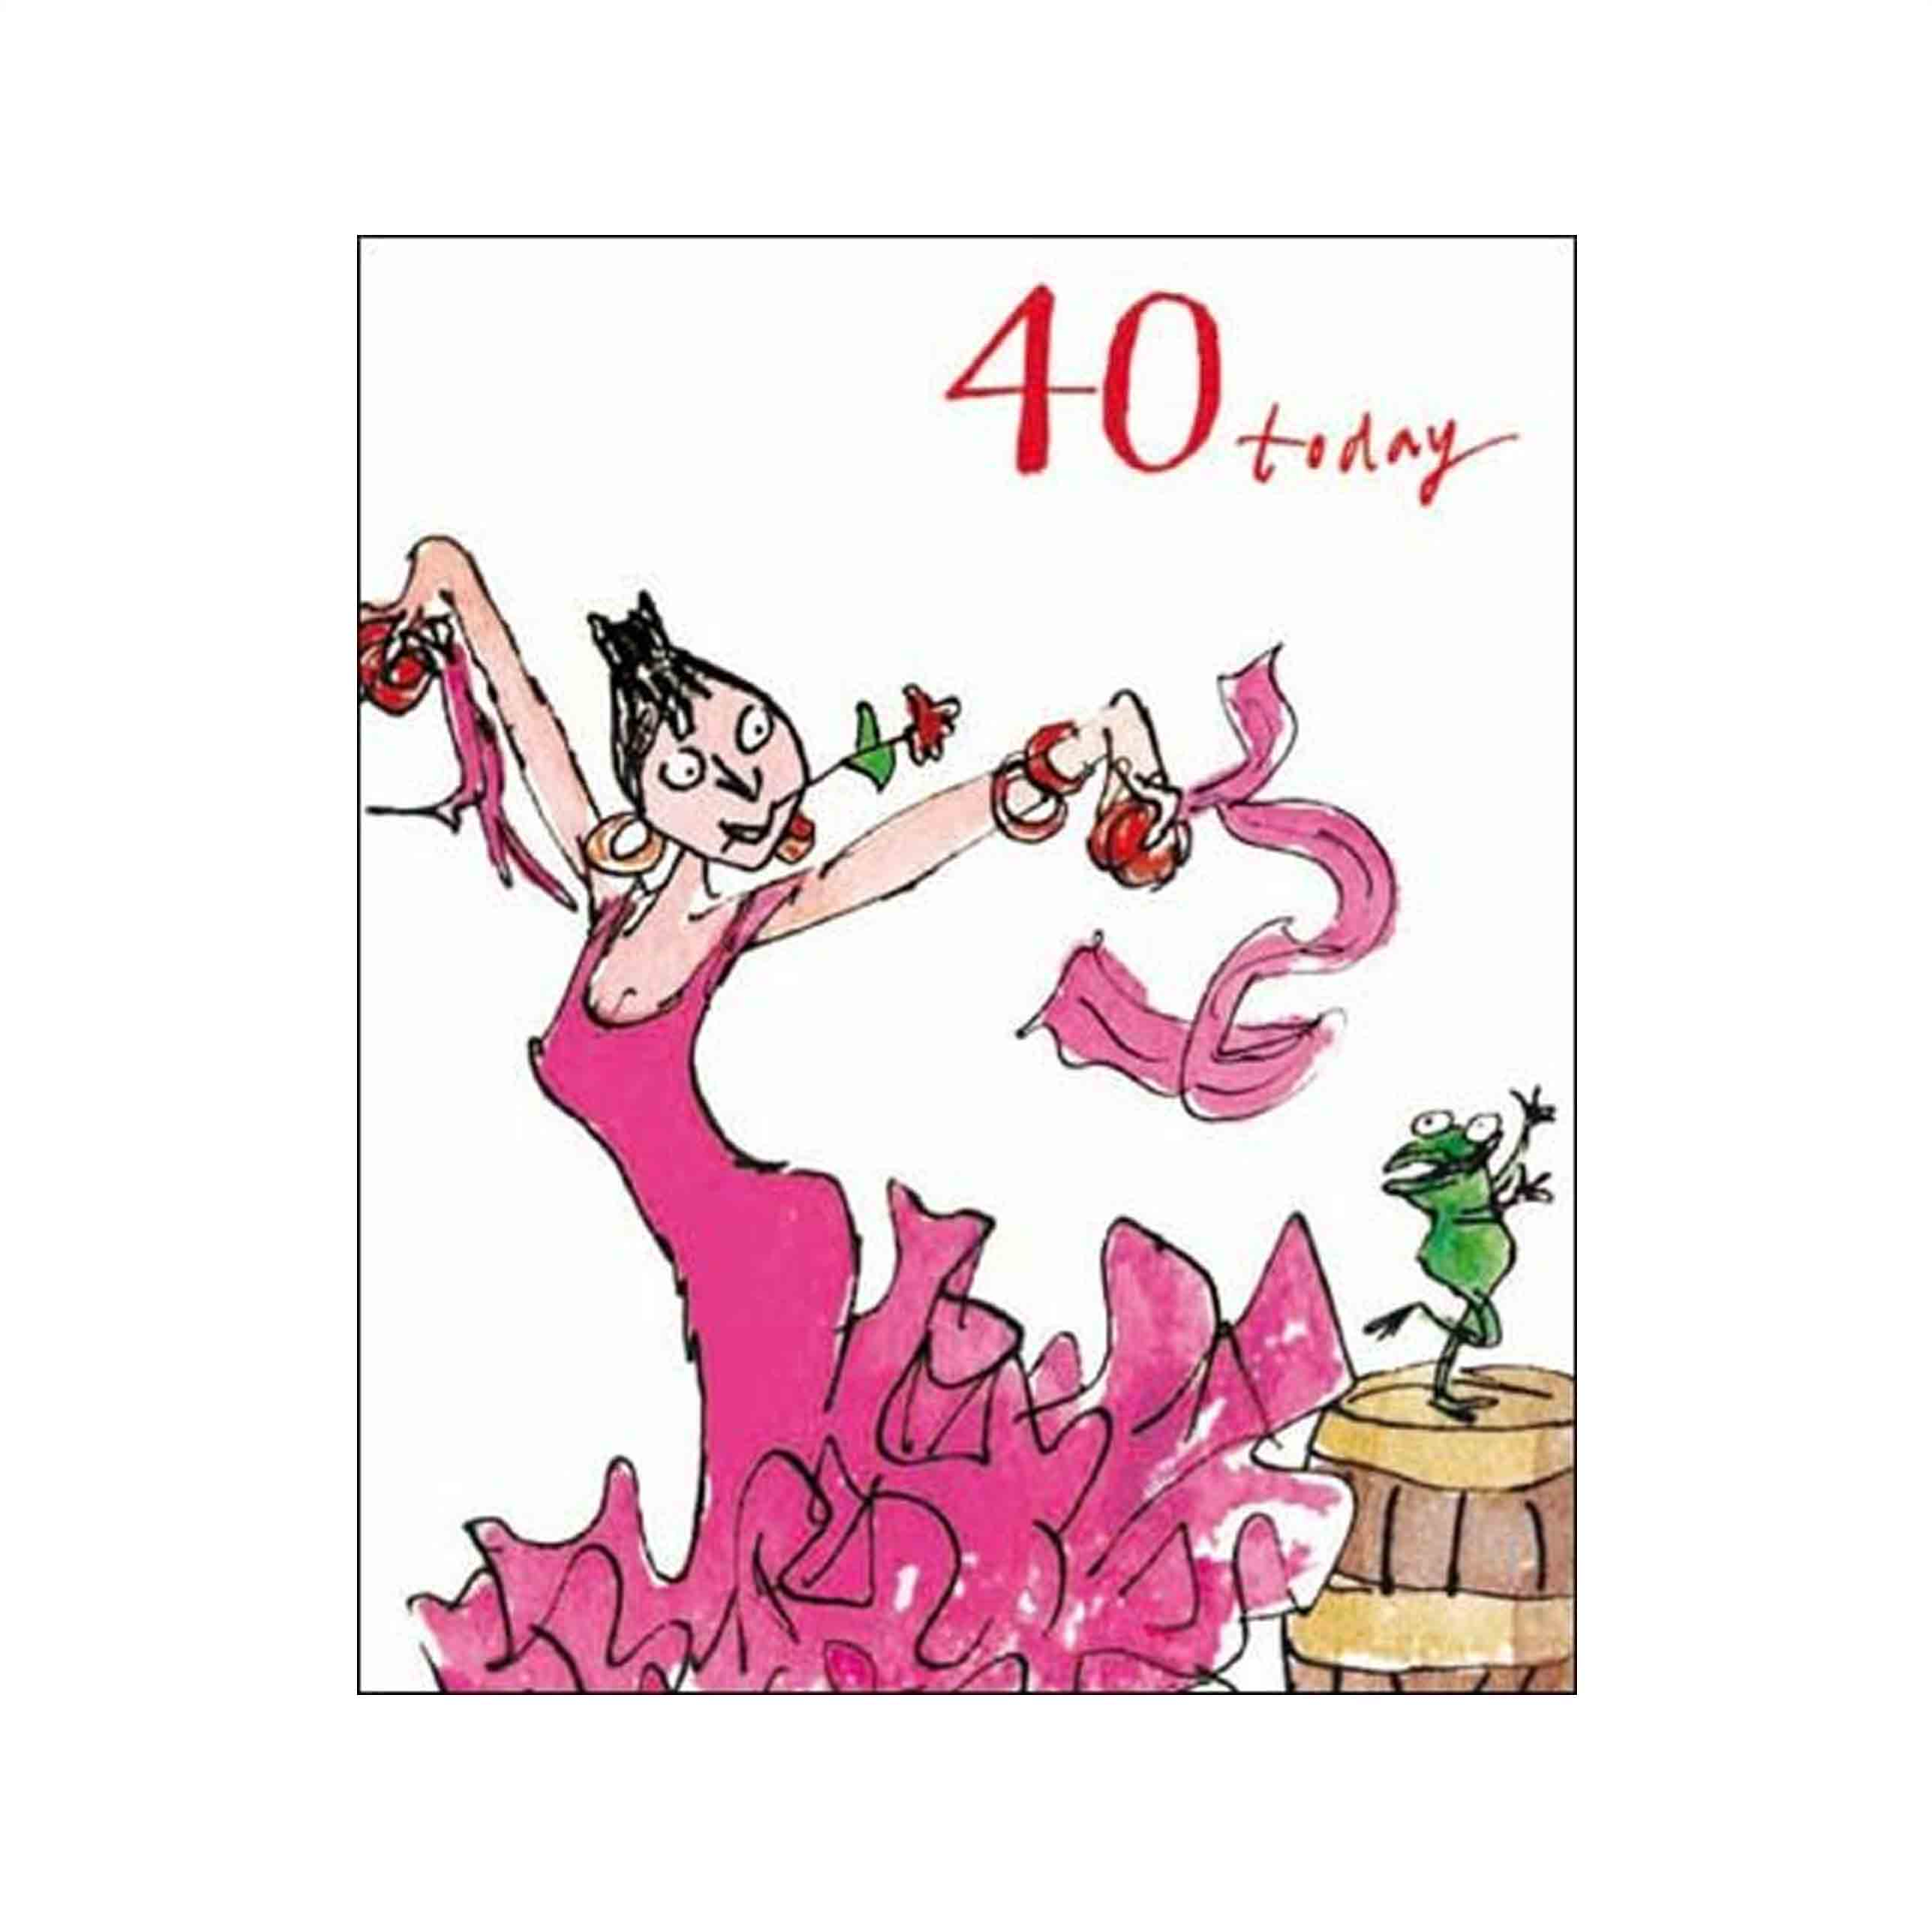 40 Birthday Card Ideas Female Birthday Card Quentin Blake Age 40